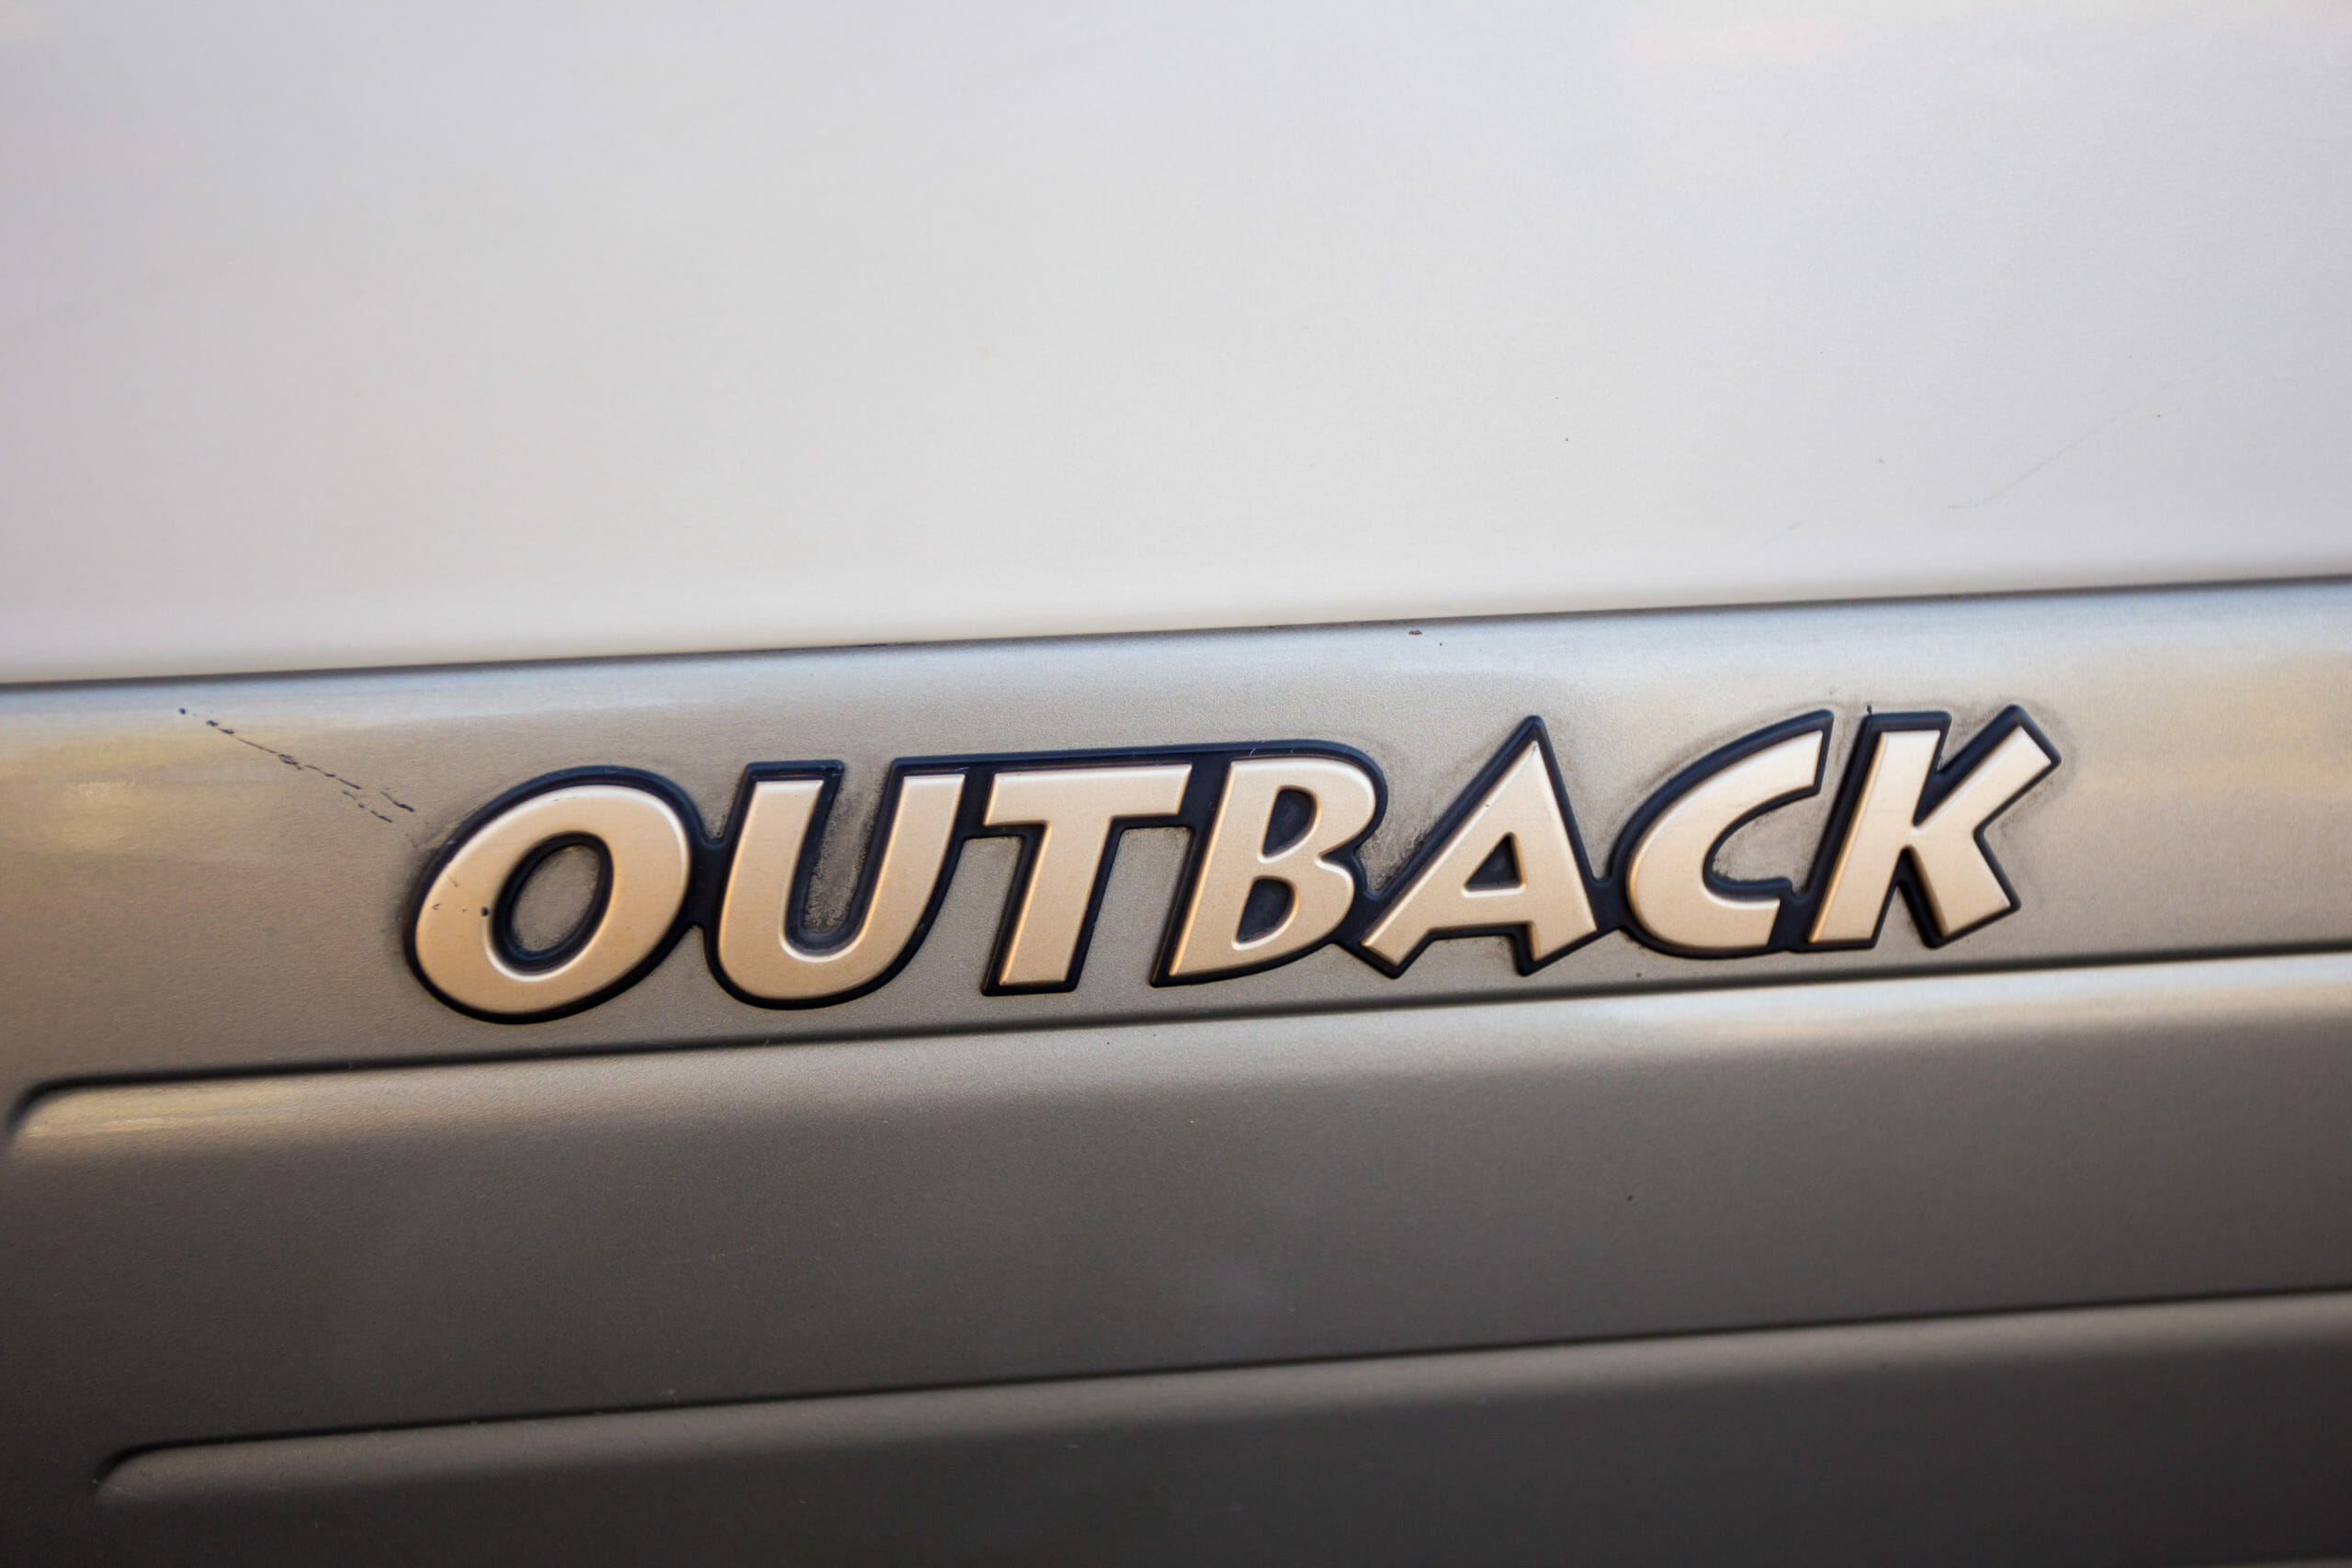 Subaru Outback logo on vehicle